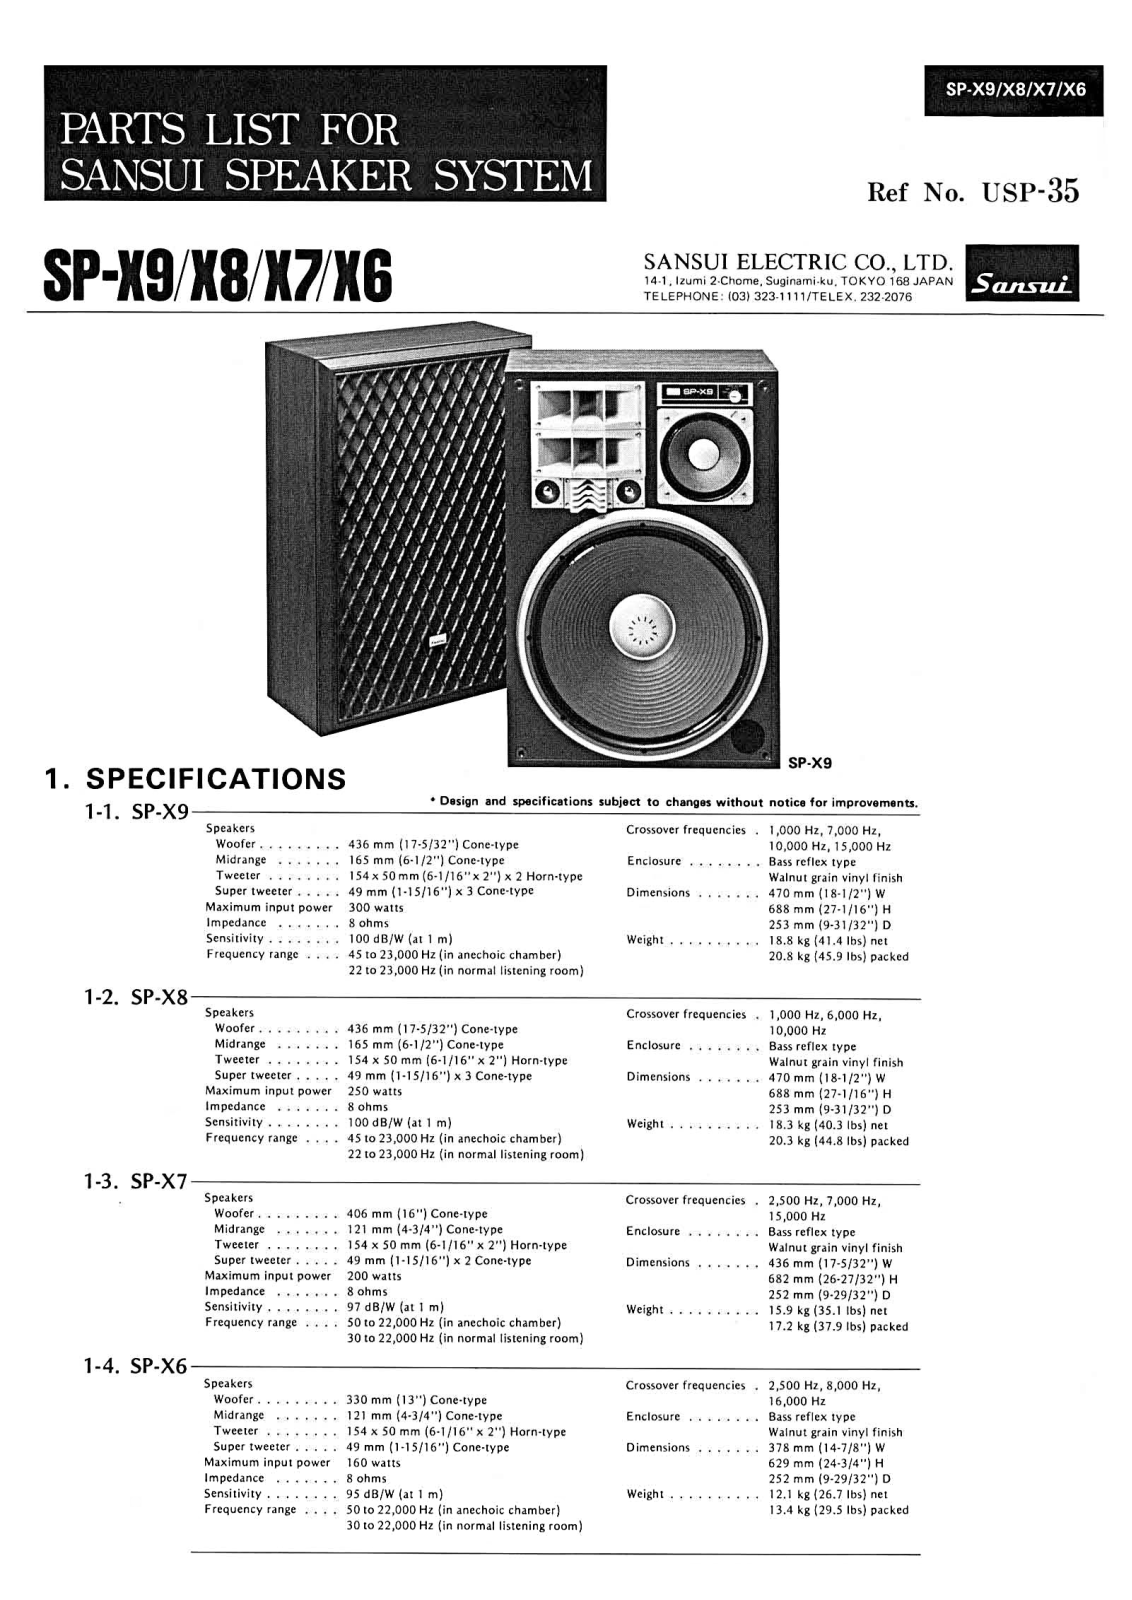 Sansui SP-X9, SP-X7, SP-X6, SP-X8 Parts list